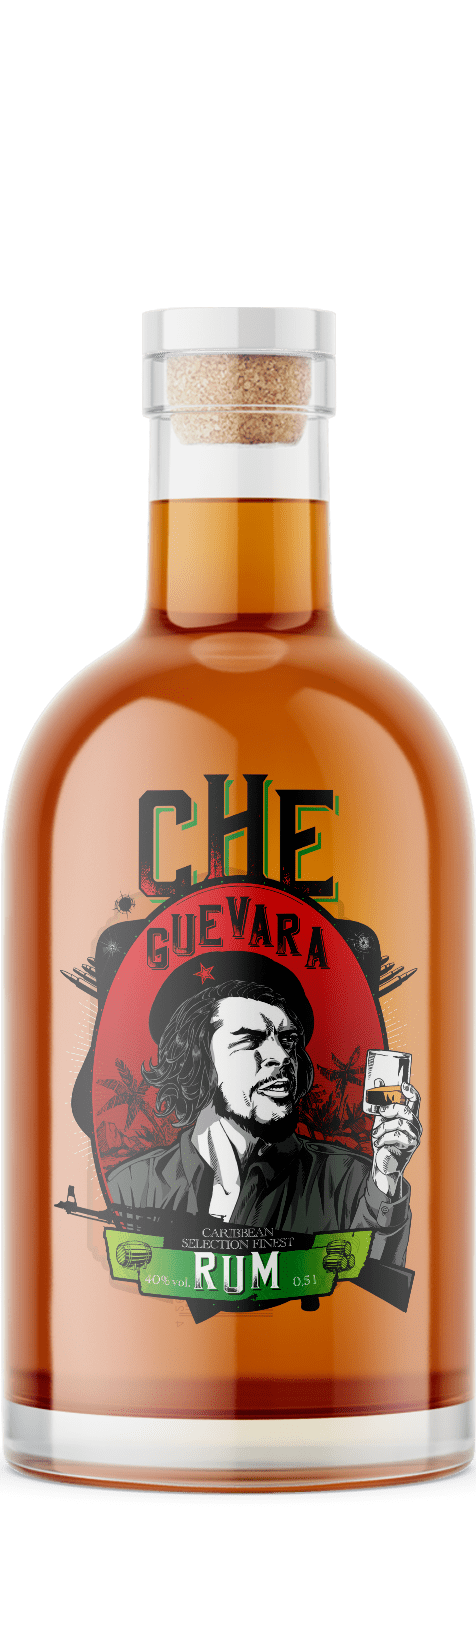 Sonderabfüllung karibischer Che guevara Rum